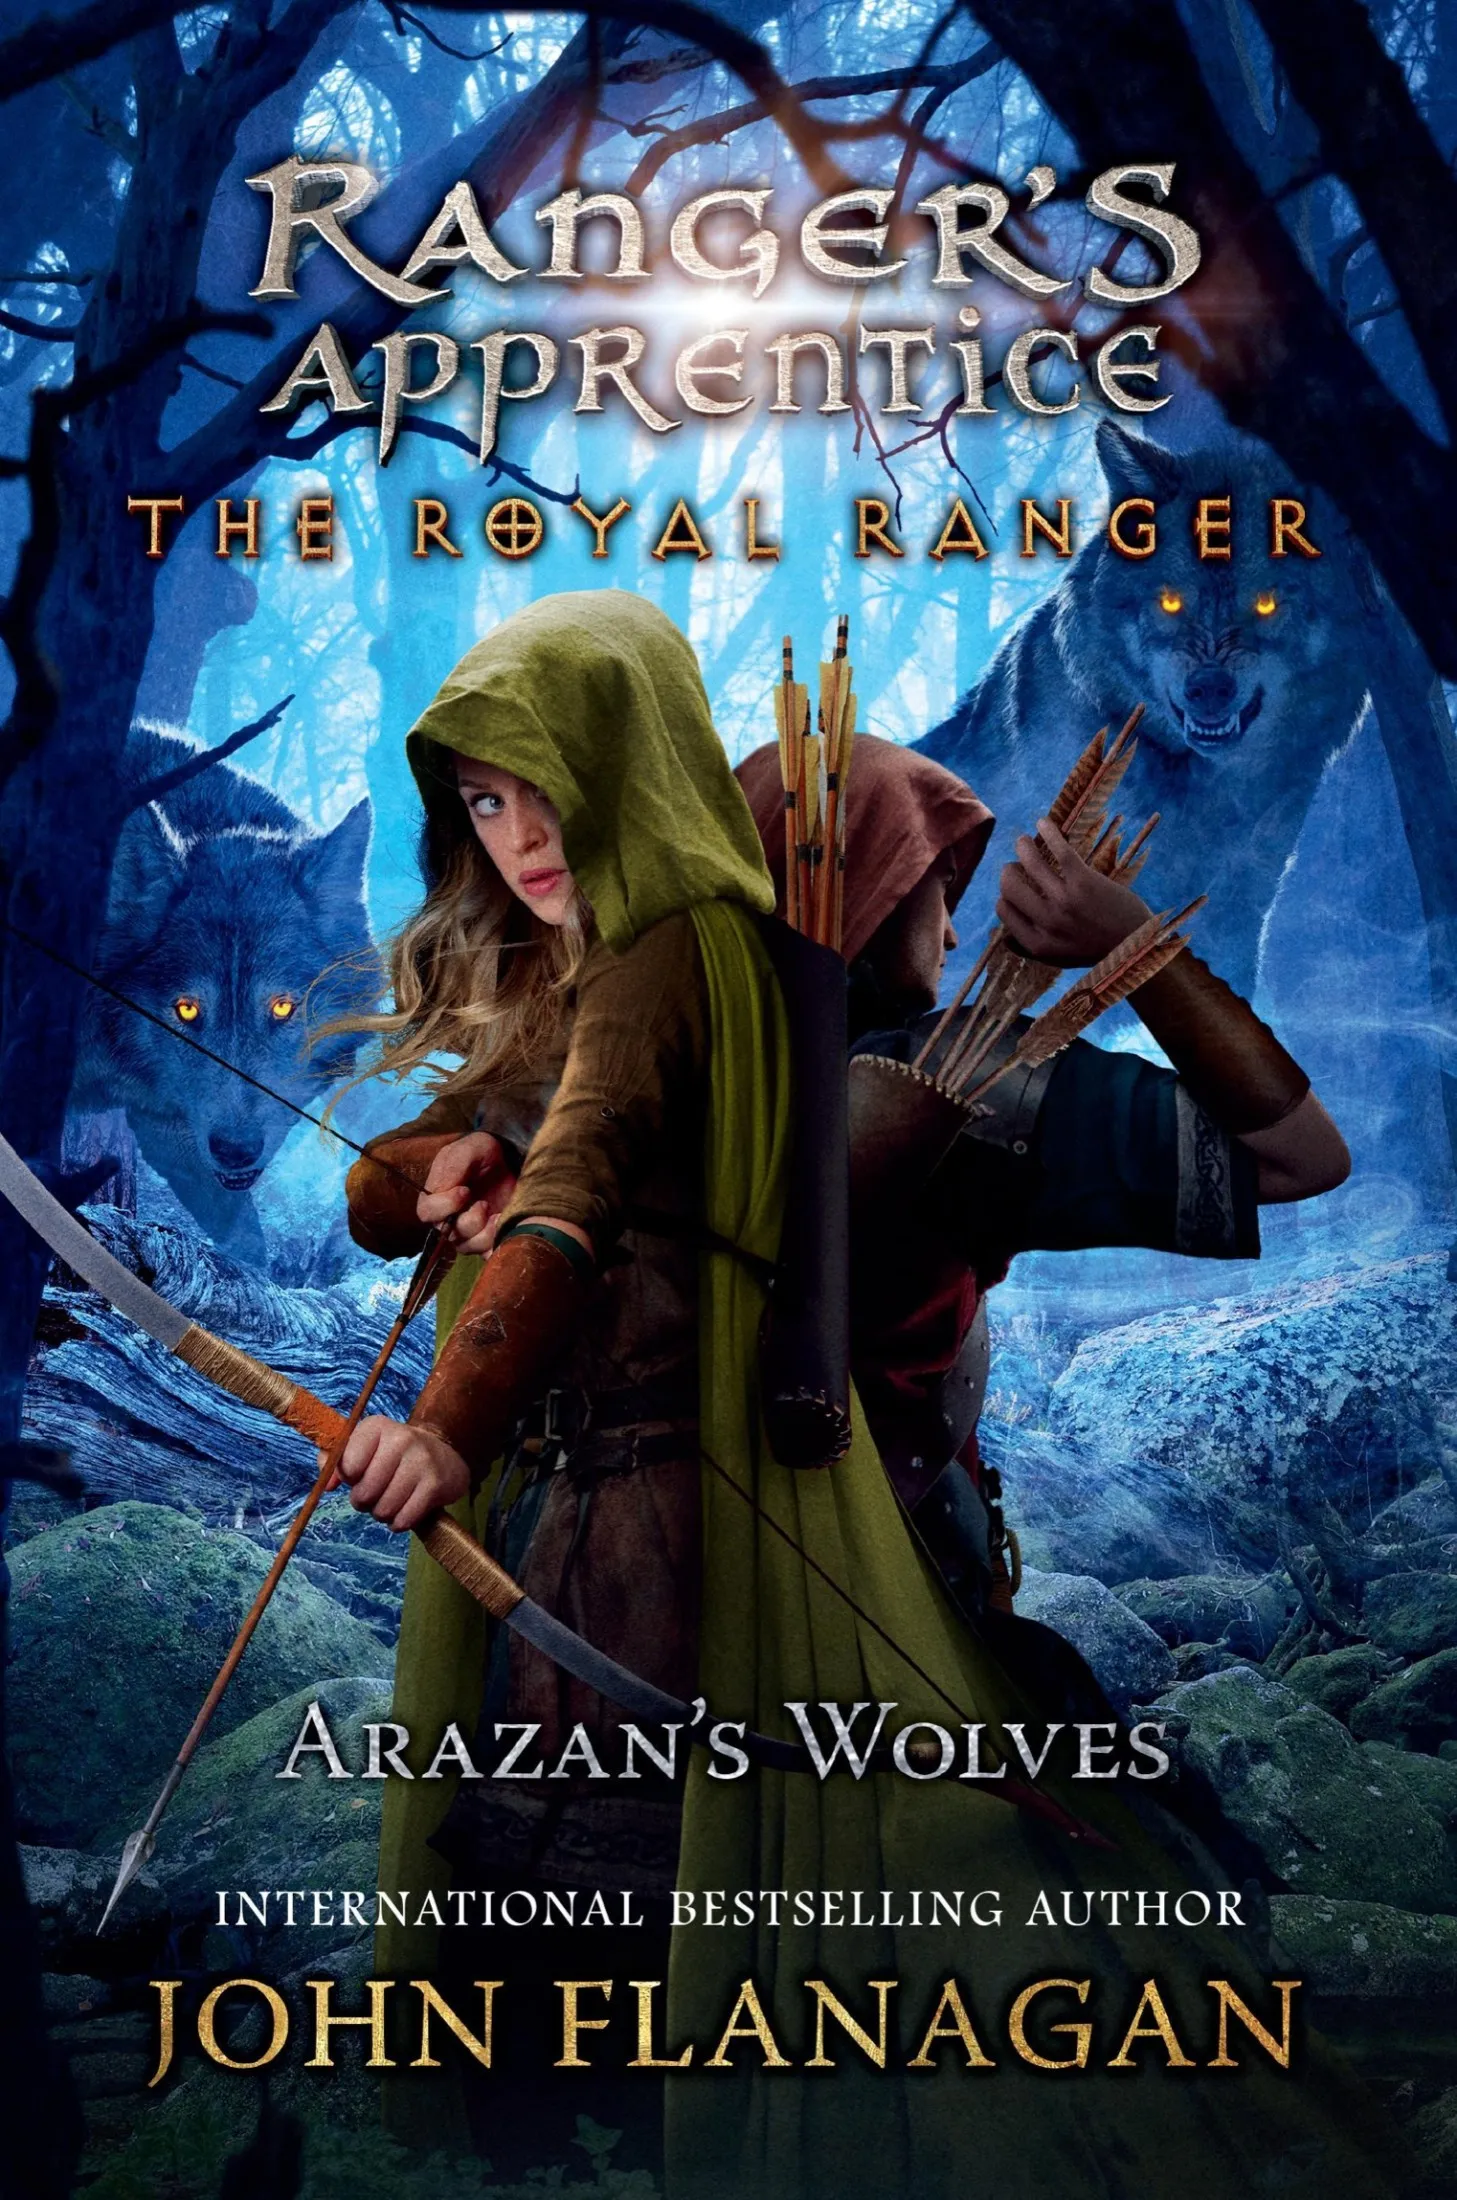 Arazan's Wolves (Ranger's Apprentice: The Royal Ranger #6)